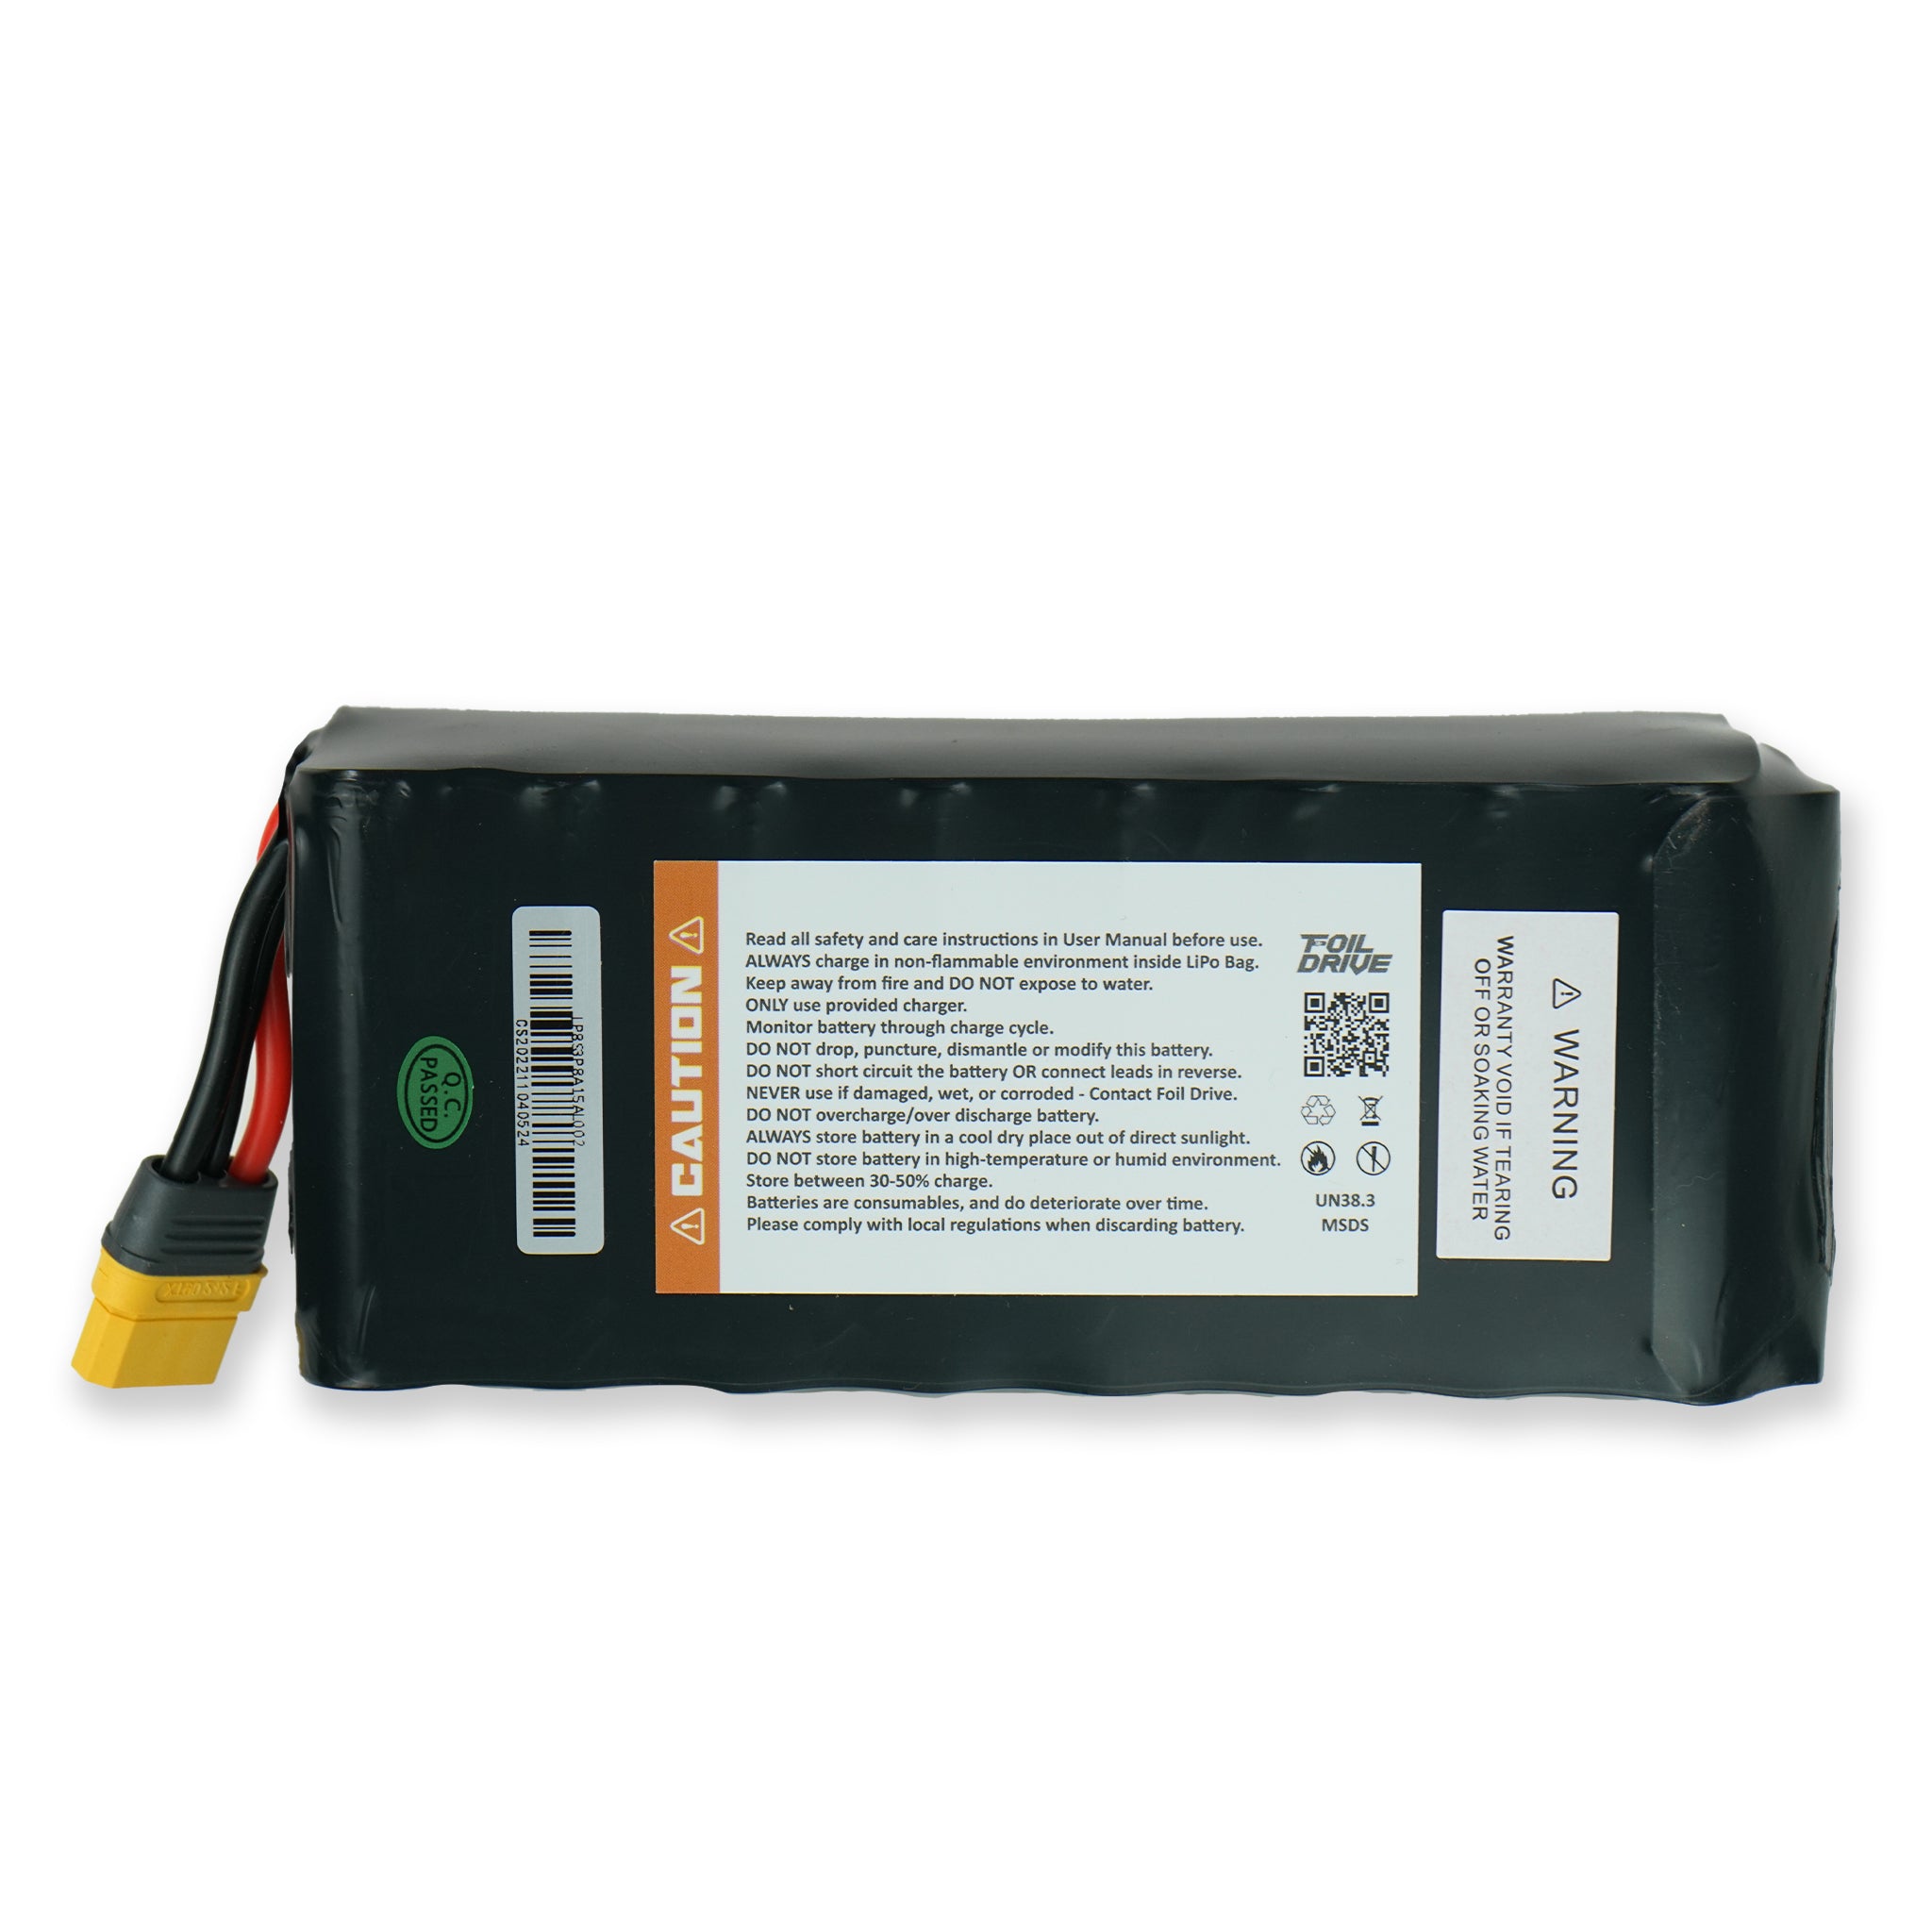 Foil Drive Assist PLUS 12.6ah Standard Battery